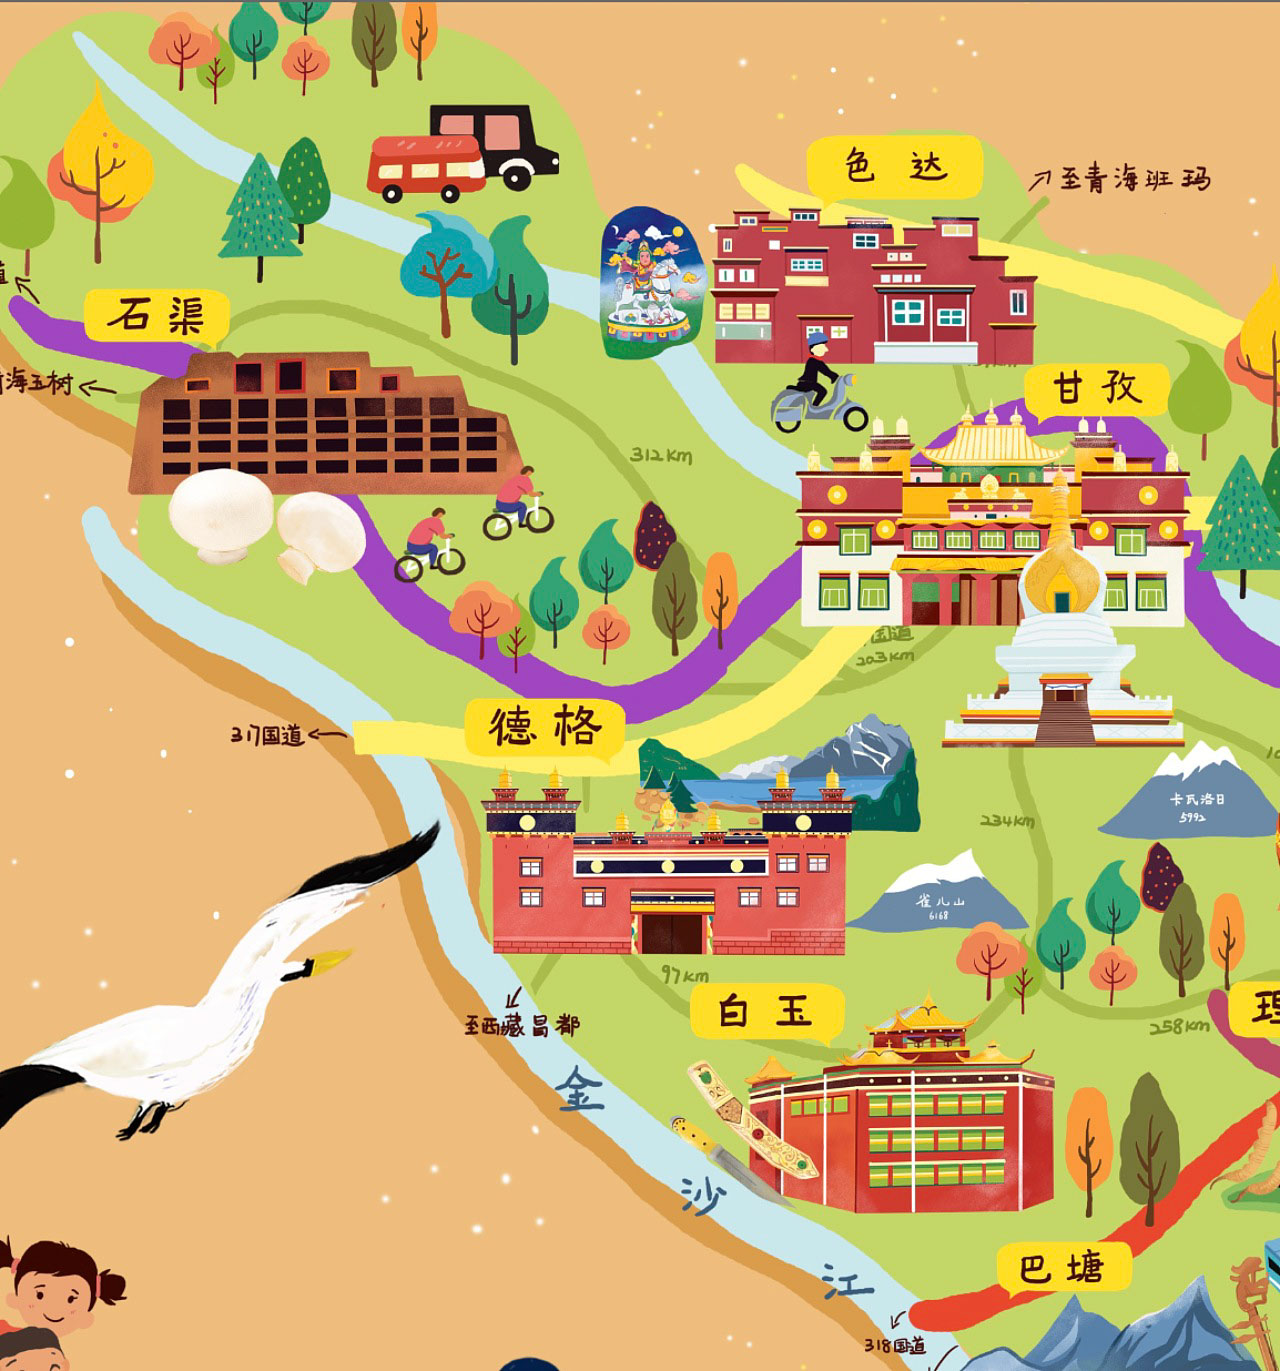 毛嘴镇手绘地图景区的文化宝库